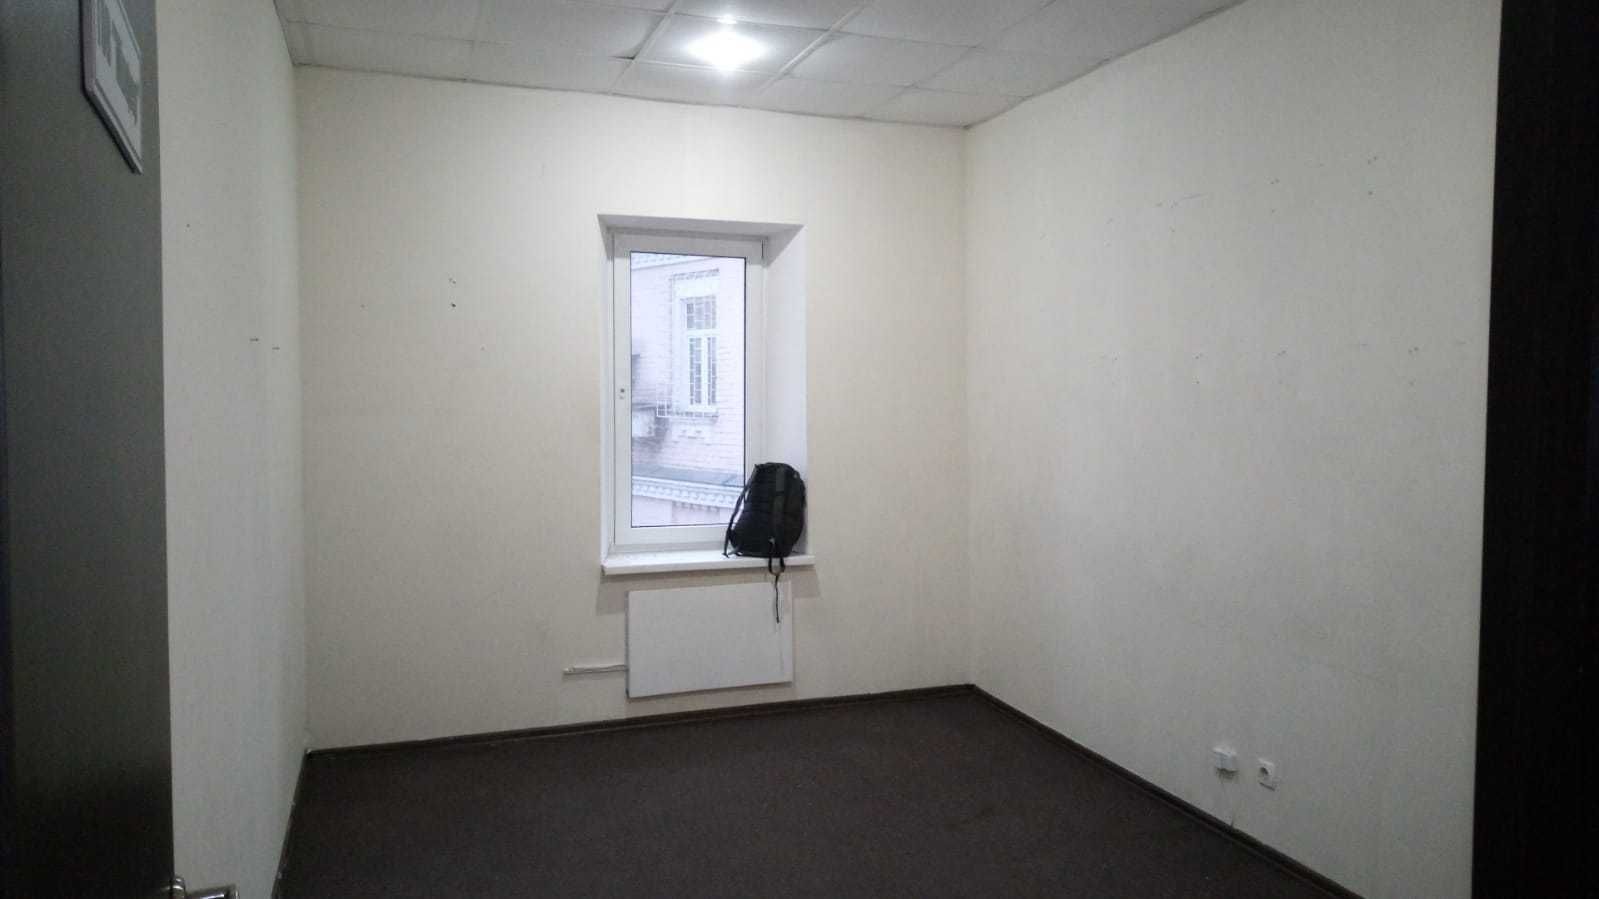 Саксаганського, оренда приміщення під офіс 12 кв.м.